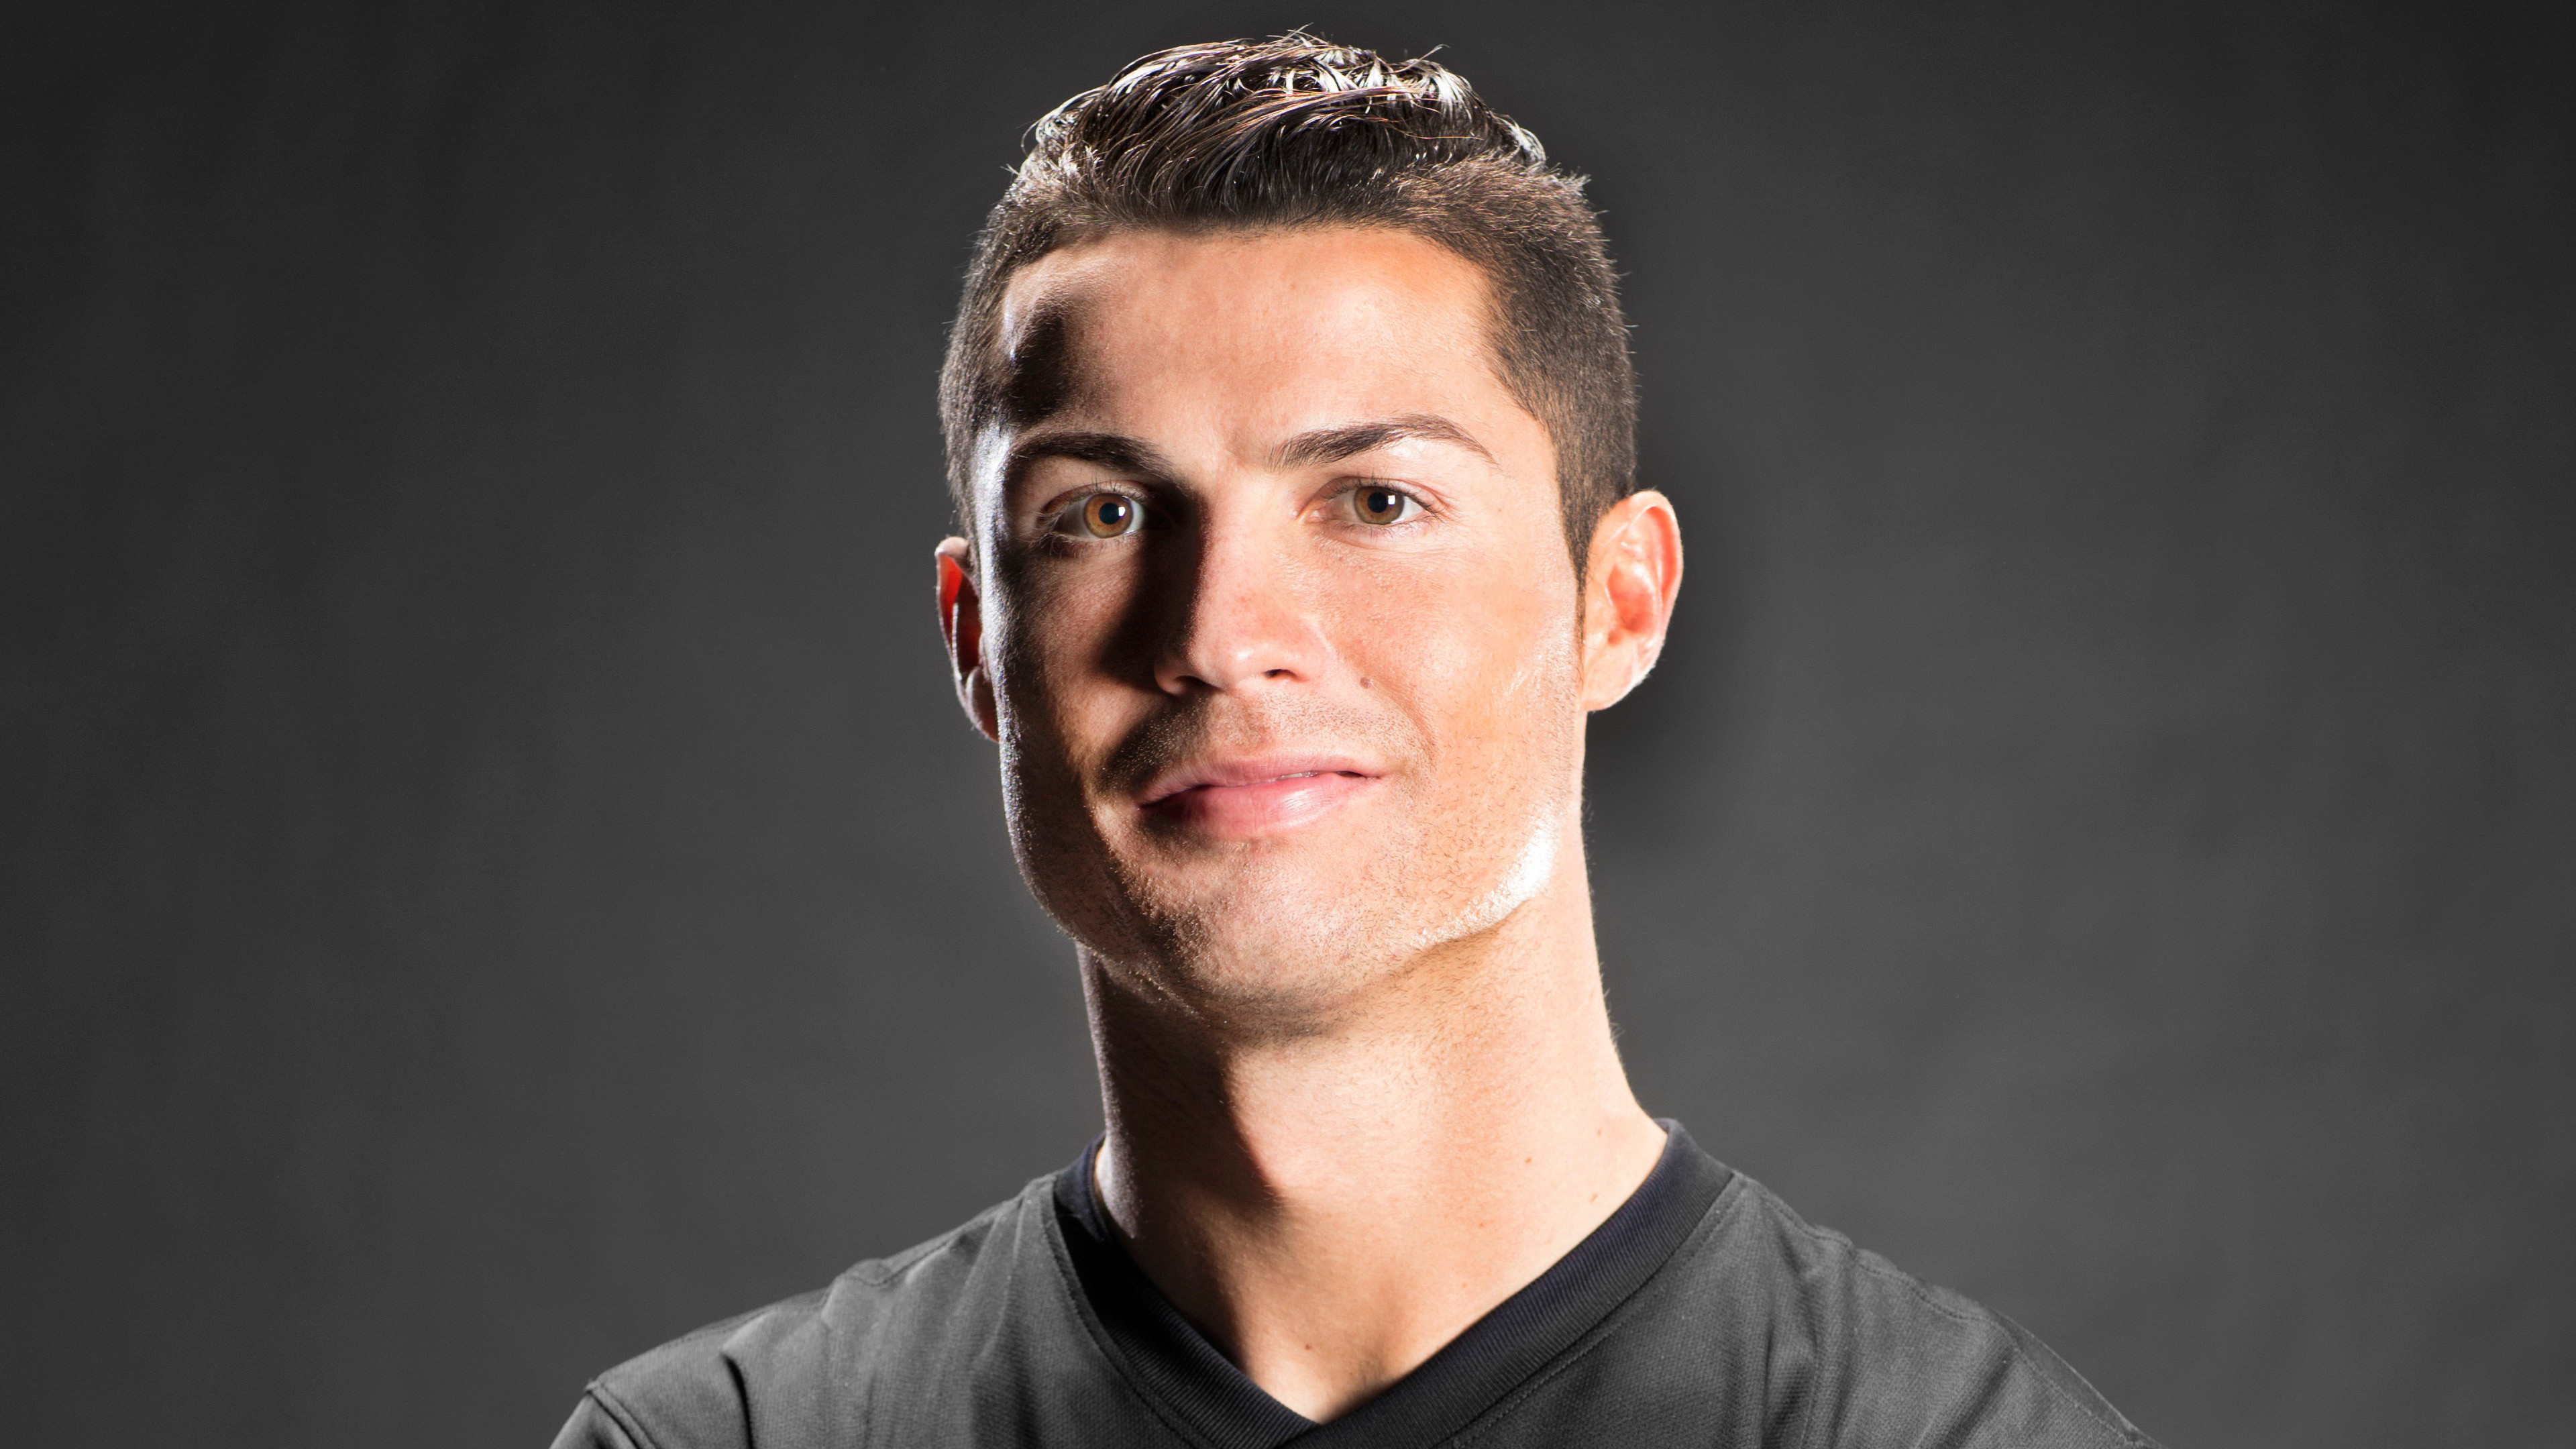 Background Ronaldo 4K Wallpaper - EnWallpaper